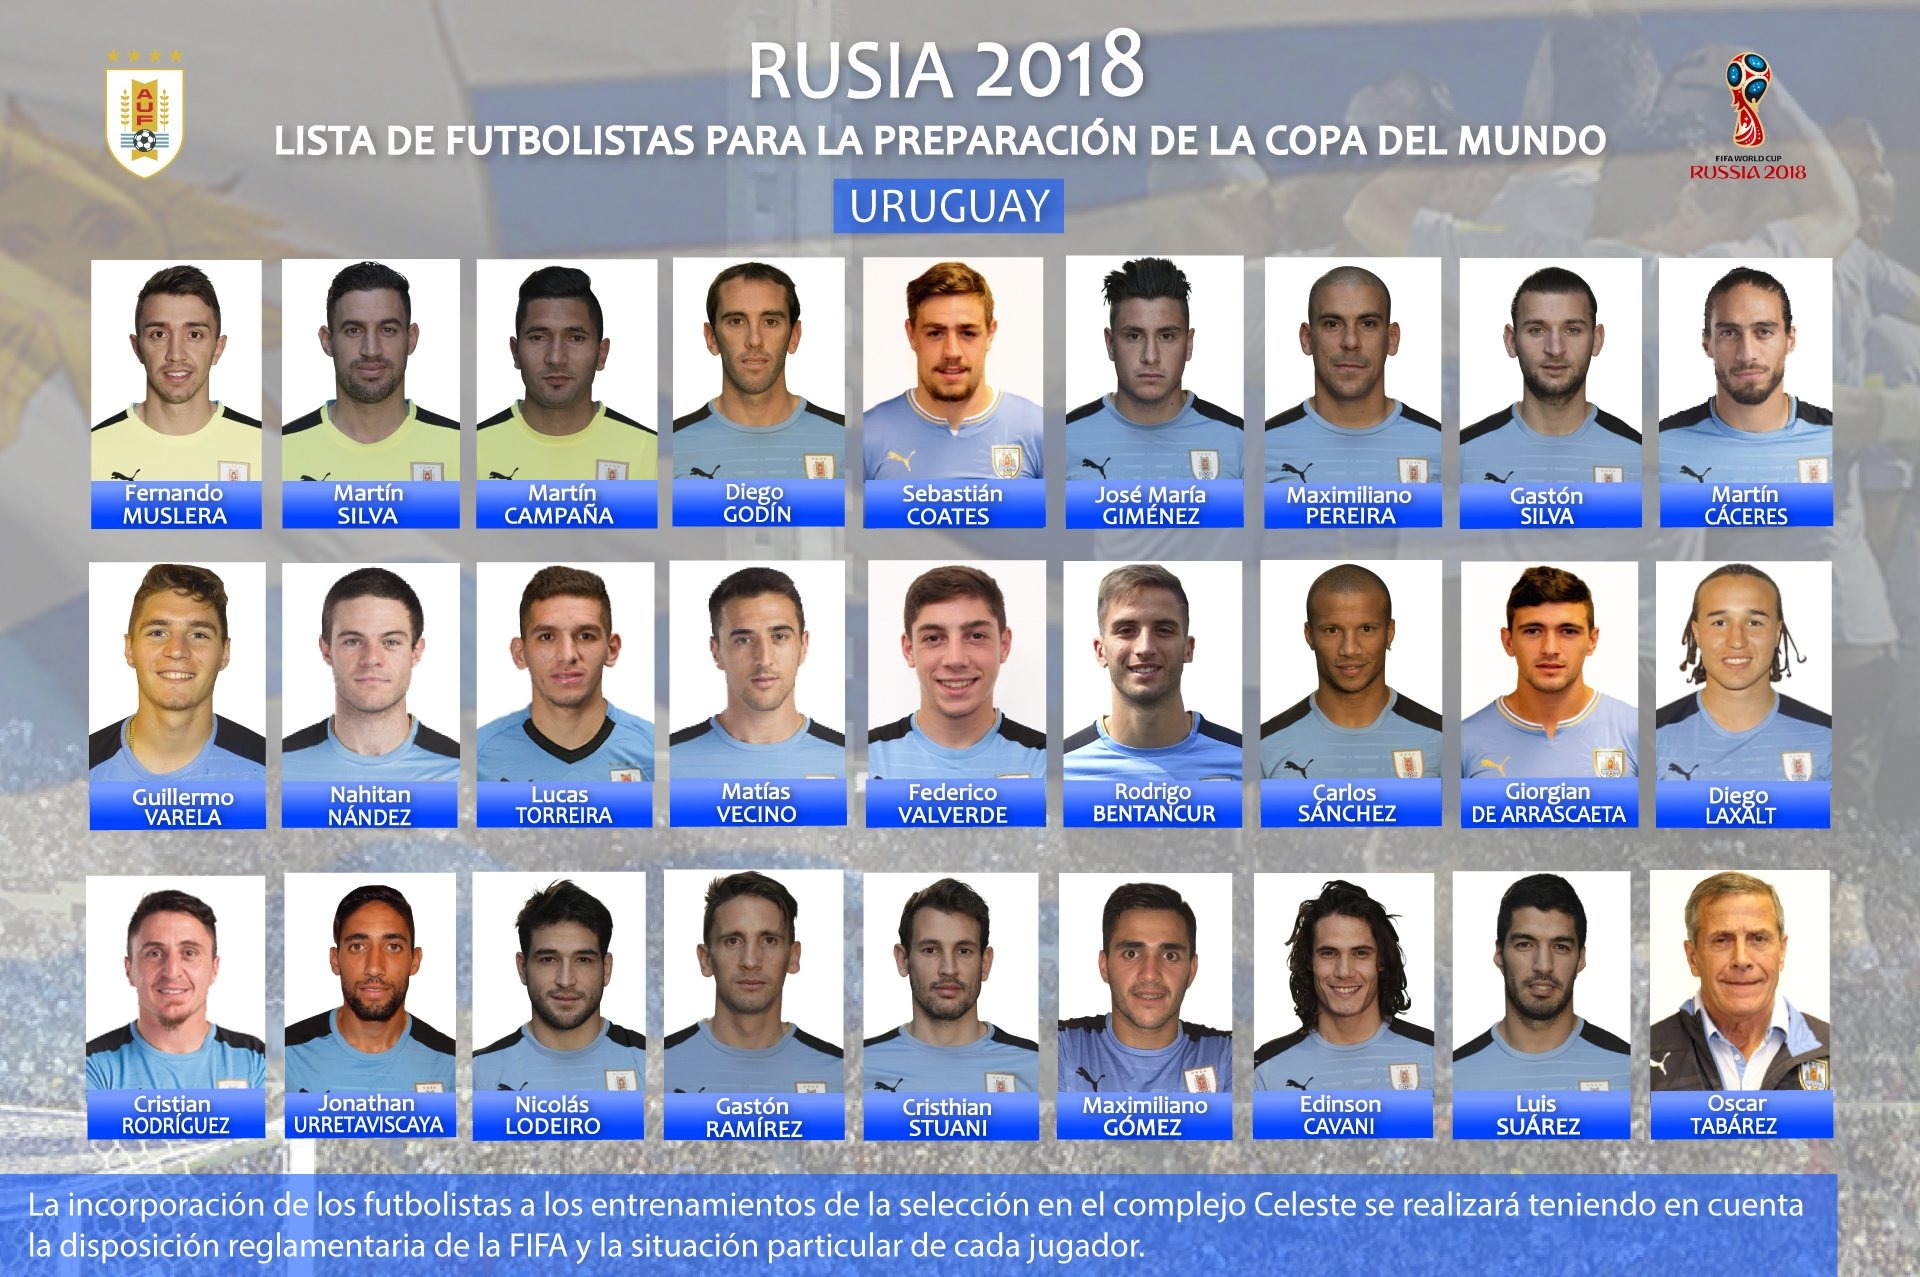 Fede Valverde sigue ascendiendo: presente en la pre-lista de Uruguay para el Mundial